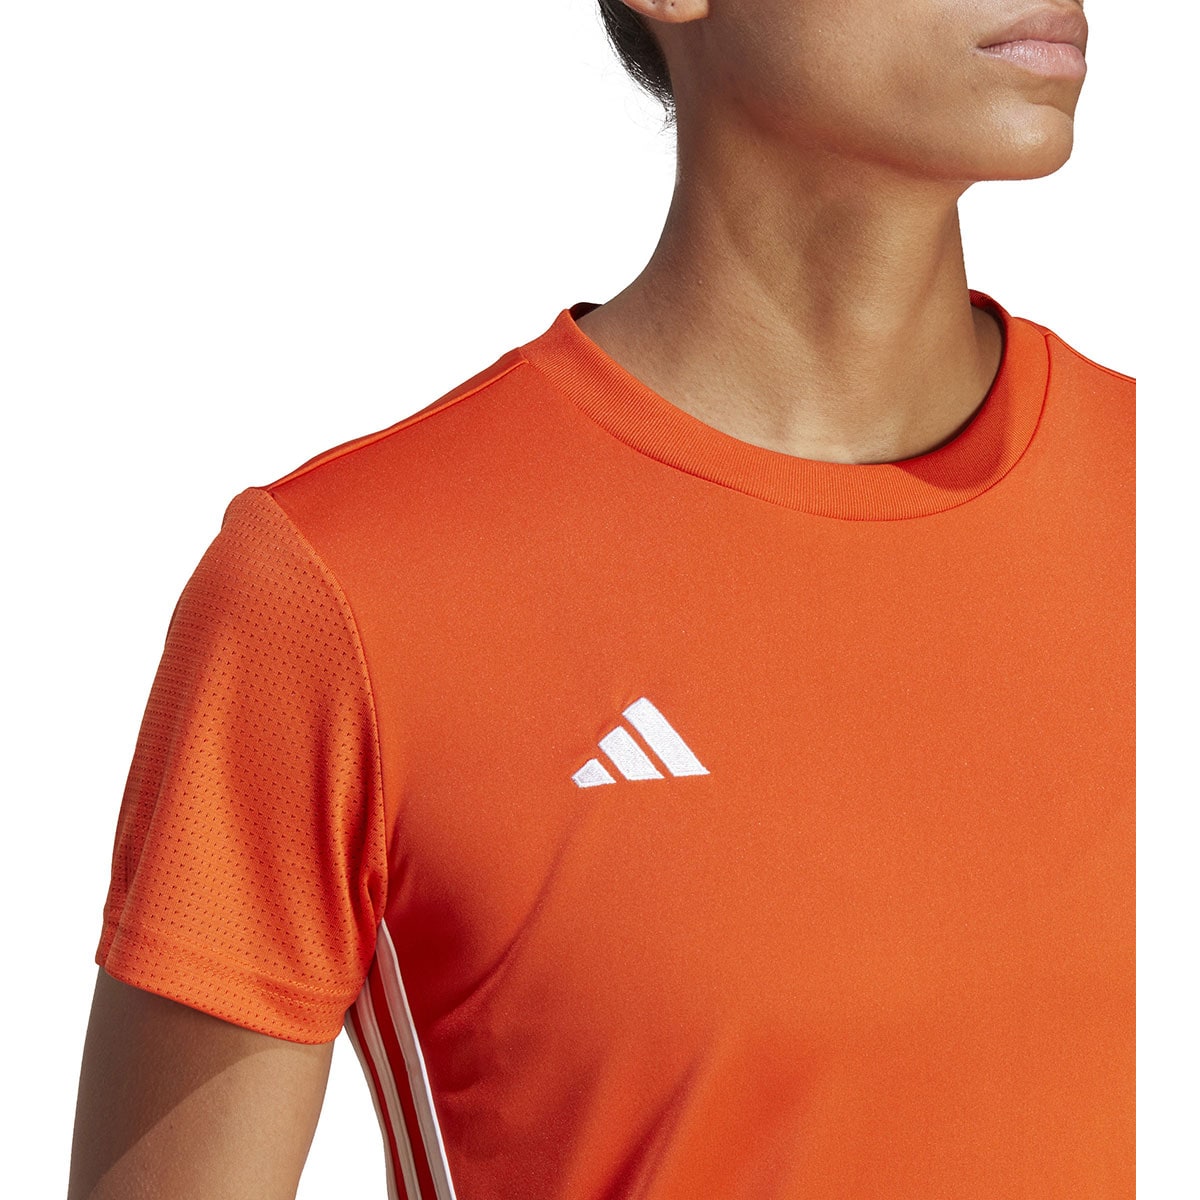 Adidas Damen Trikot Tabela 23 orange-weiß